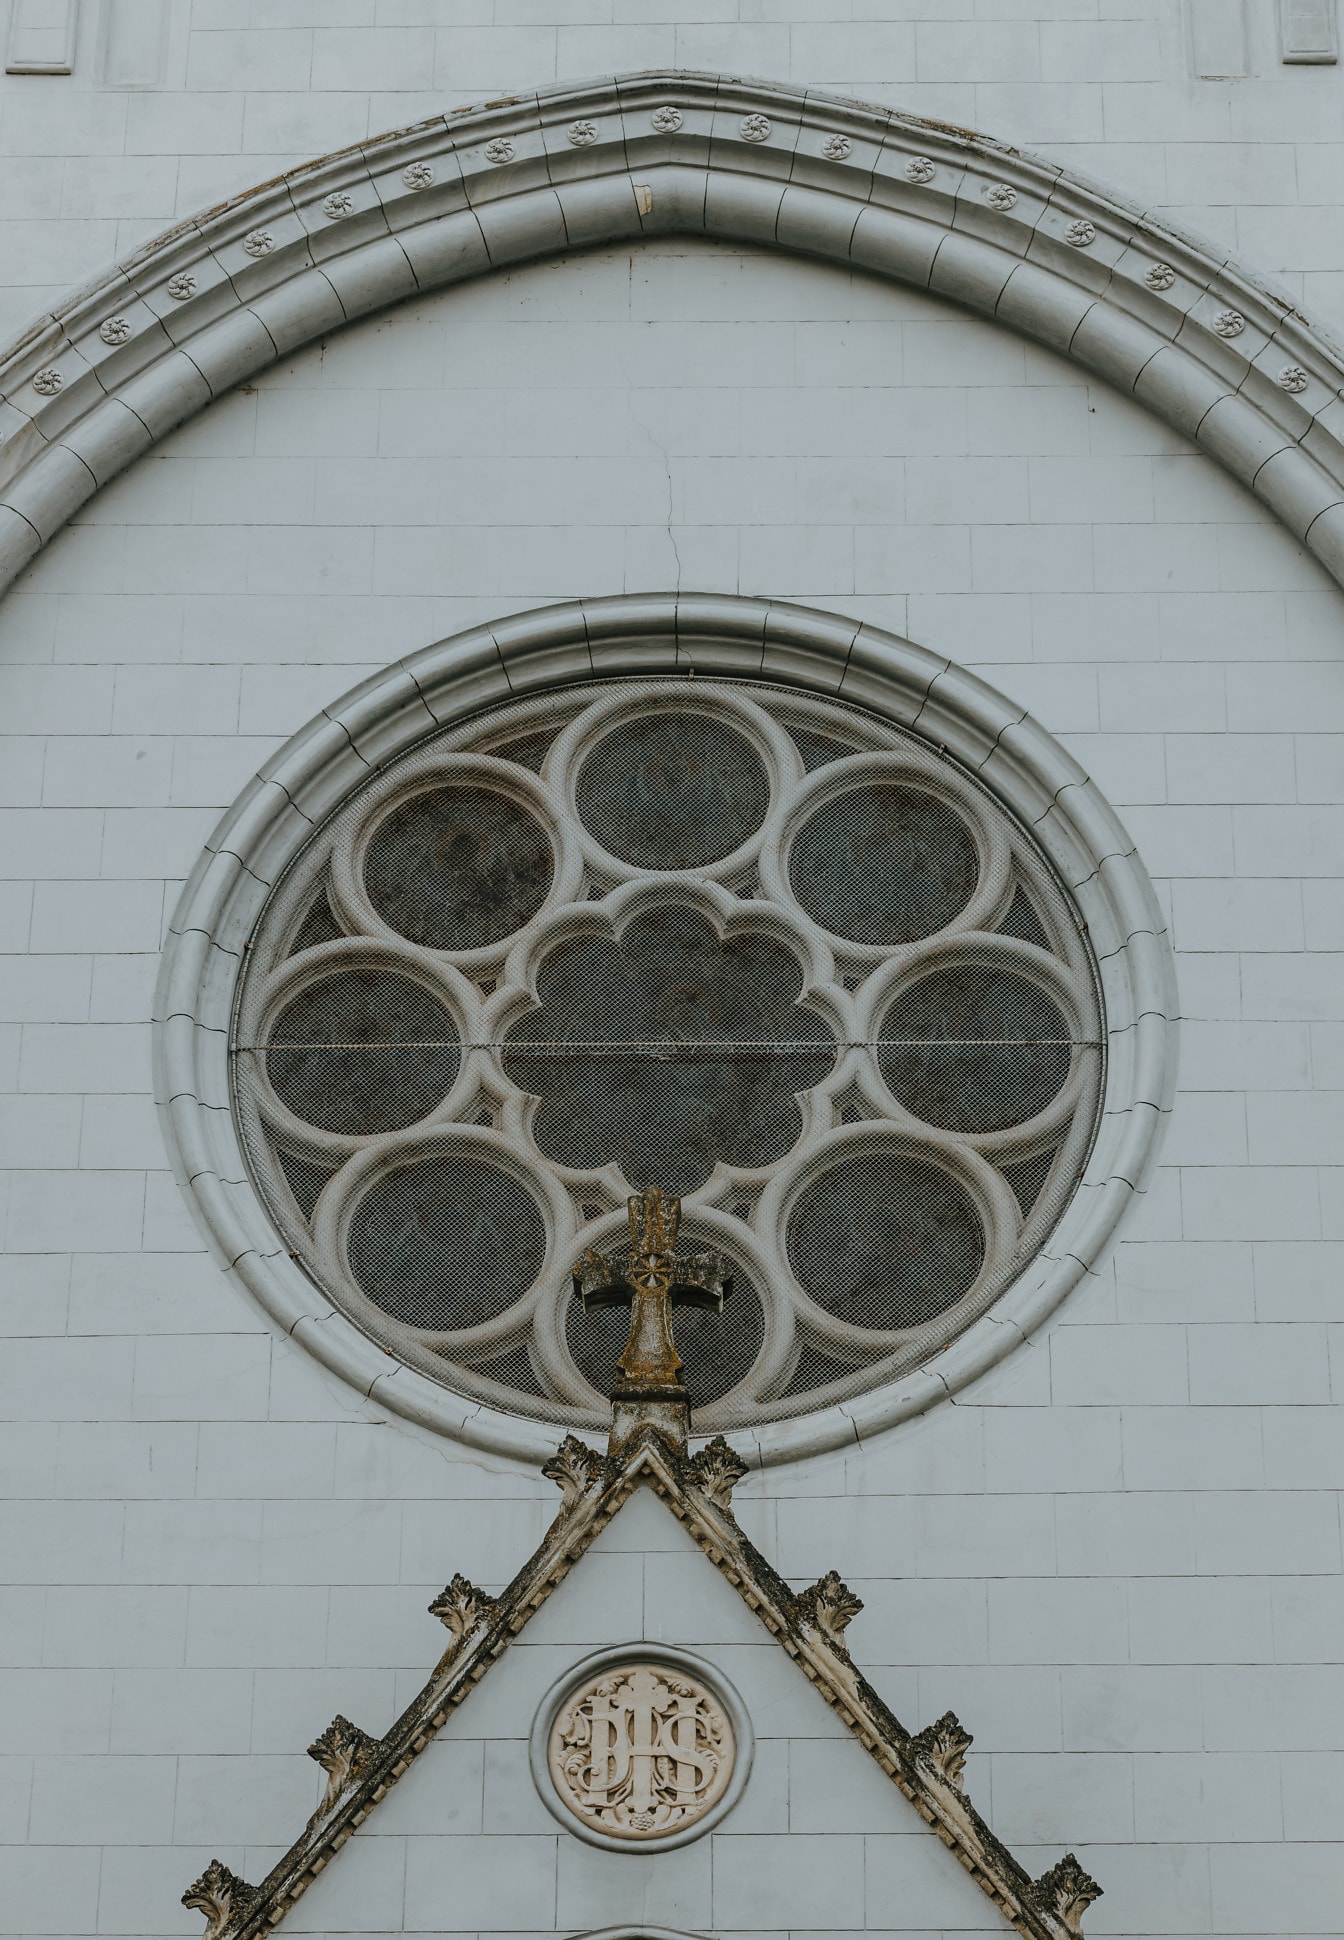 Zewnętrzna część gotyckiej katedry z okrągłym oknem z ozdobnymi detalami